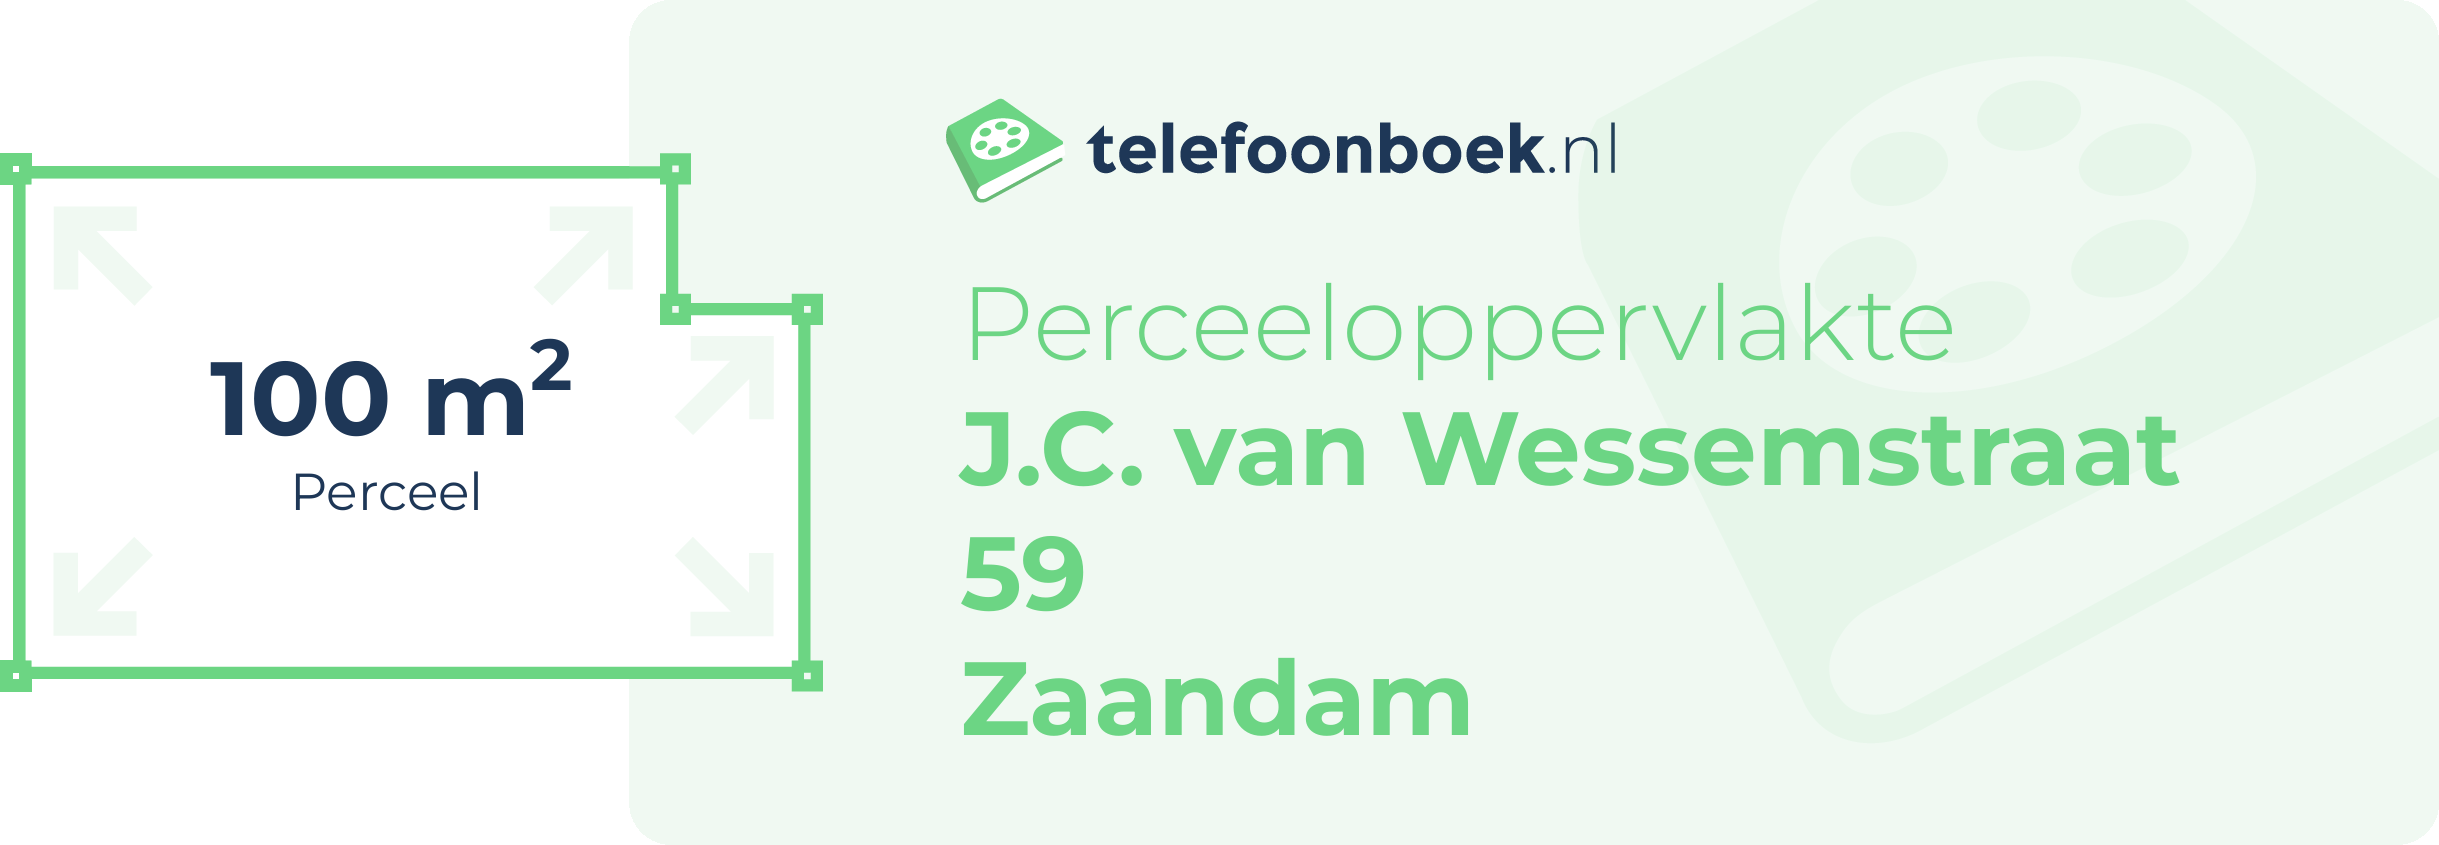 Perceeloppervlakte J.C. Van Wessemstraat 59 Zaandam